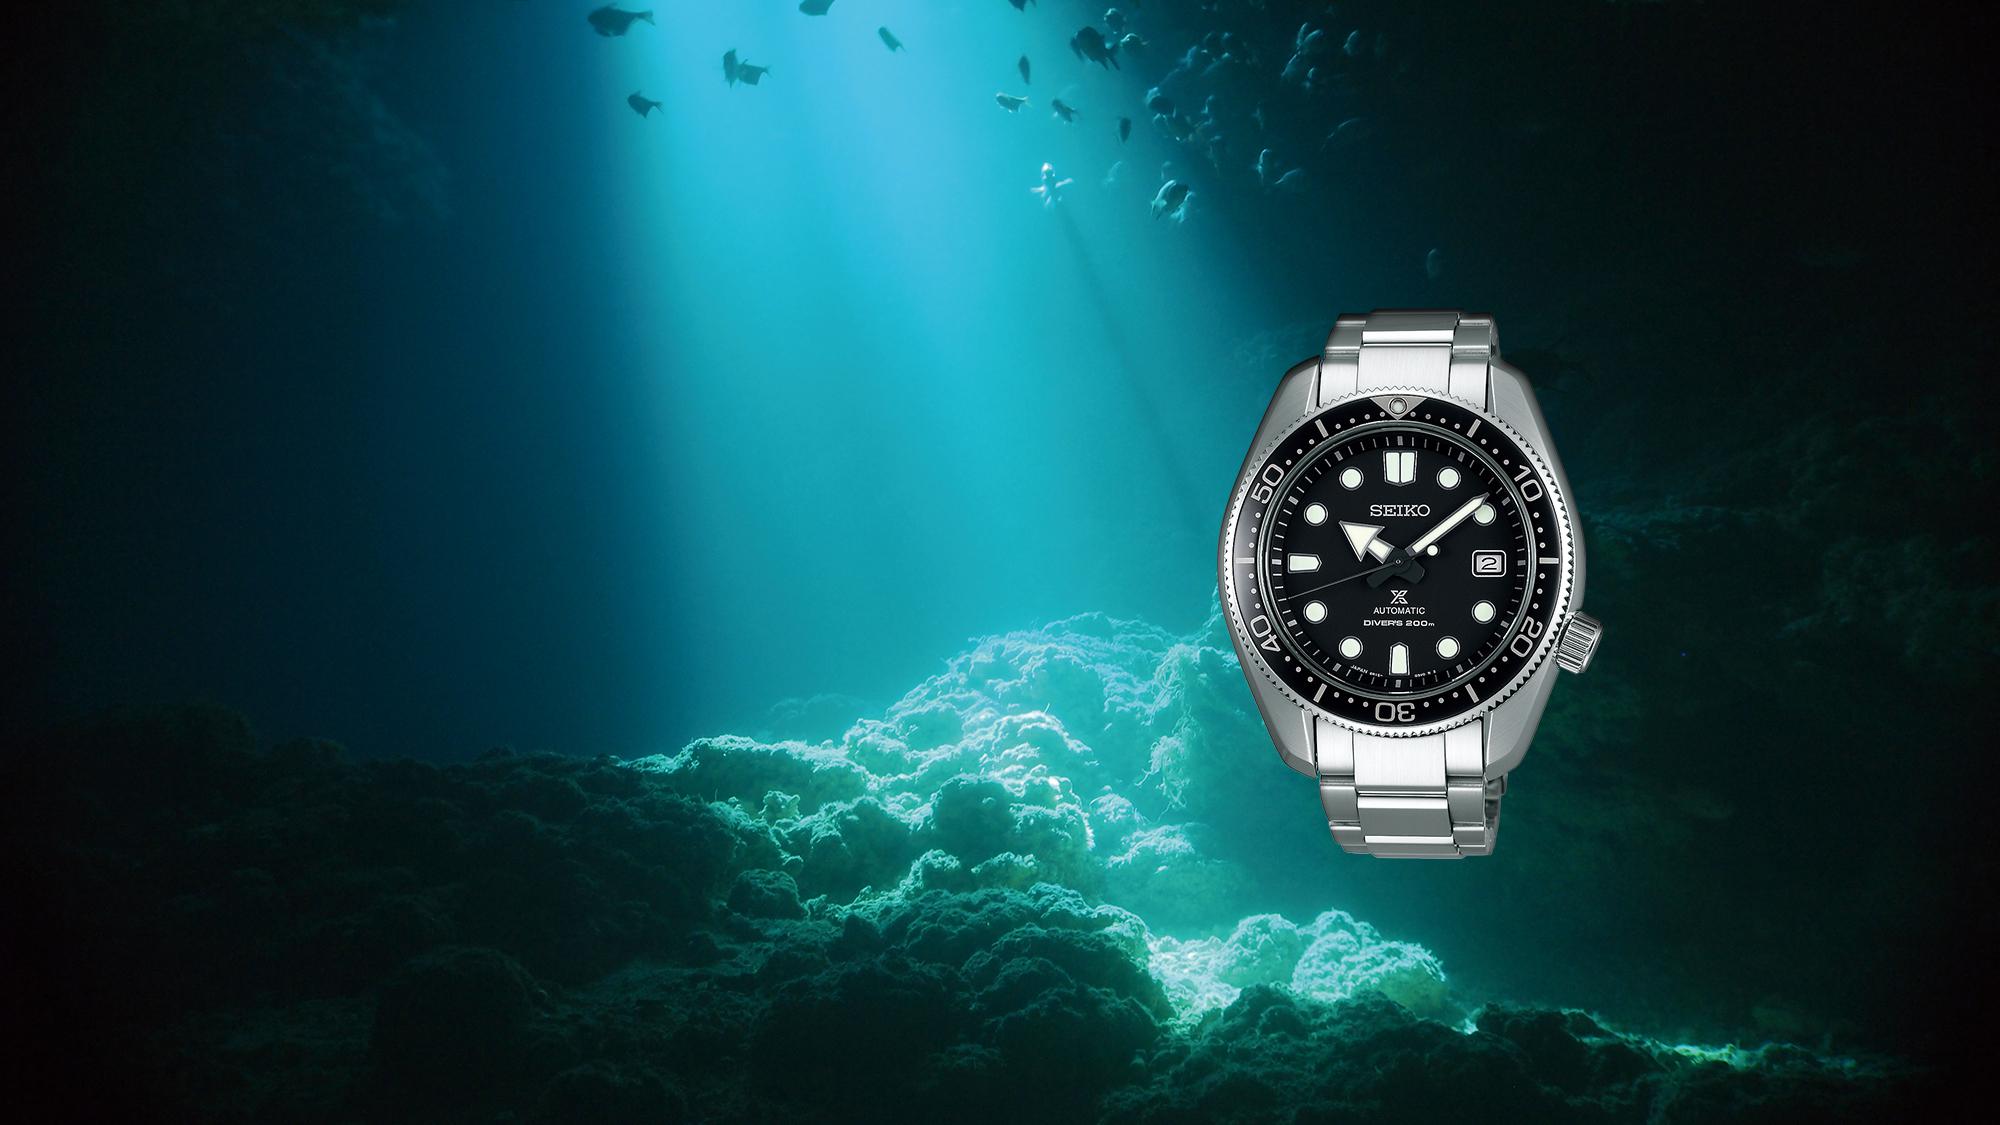 Seiko Dive Watch, Steel Watch, Water-resistant Watch, Underwater, Japanese Watch